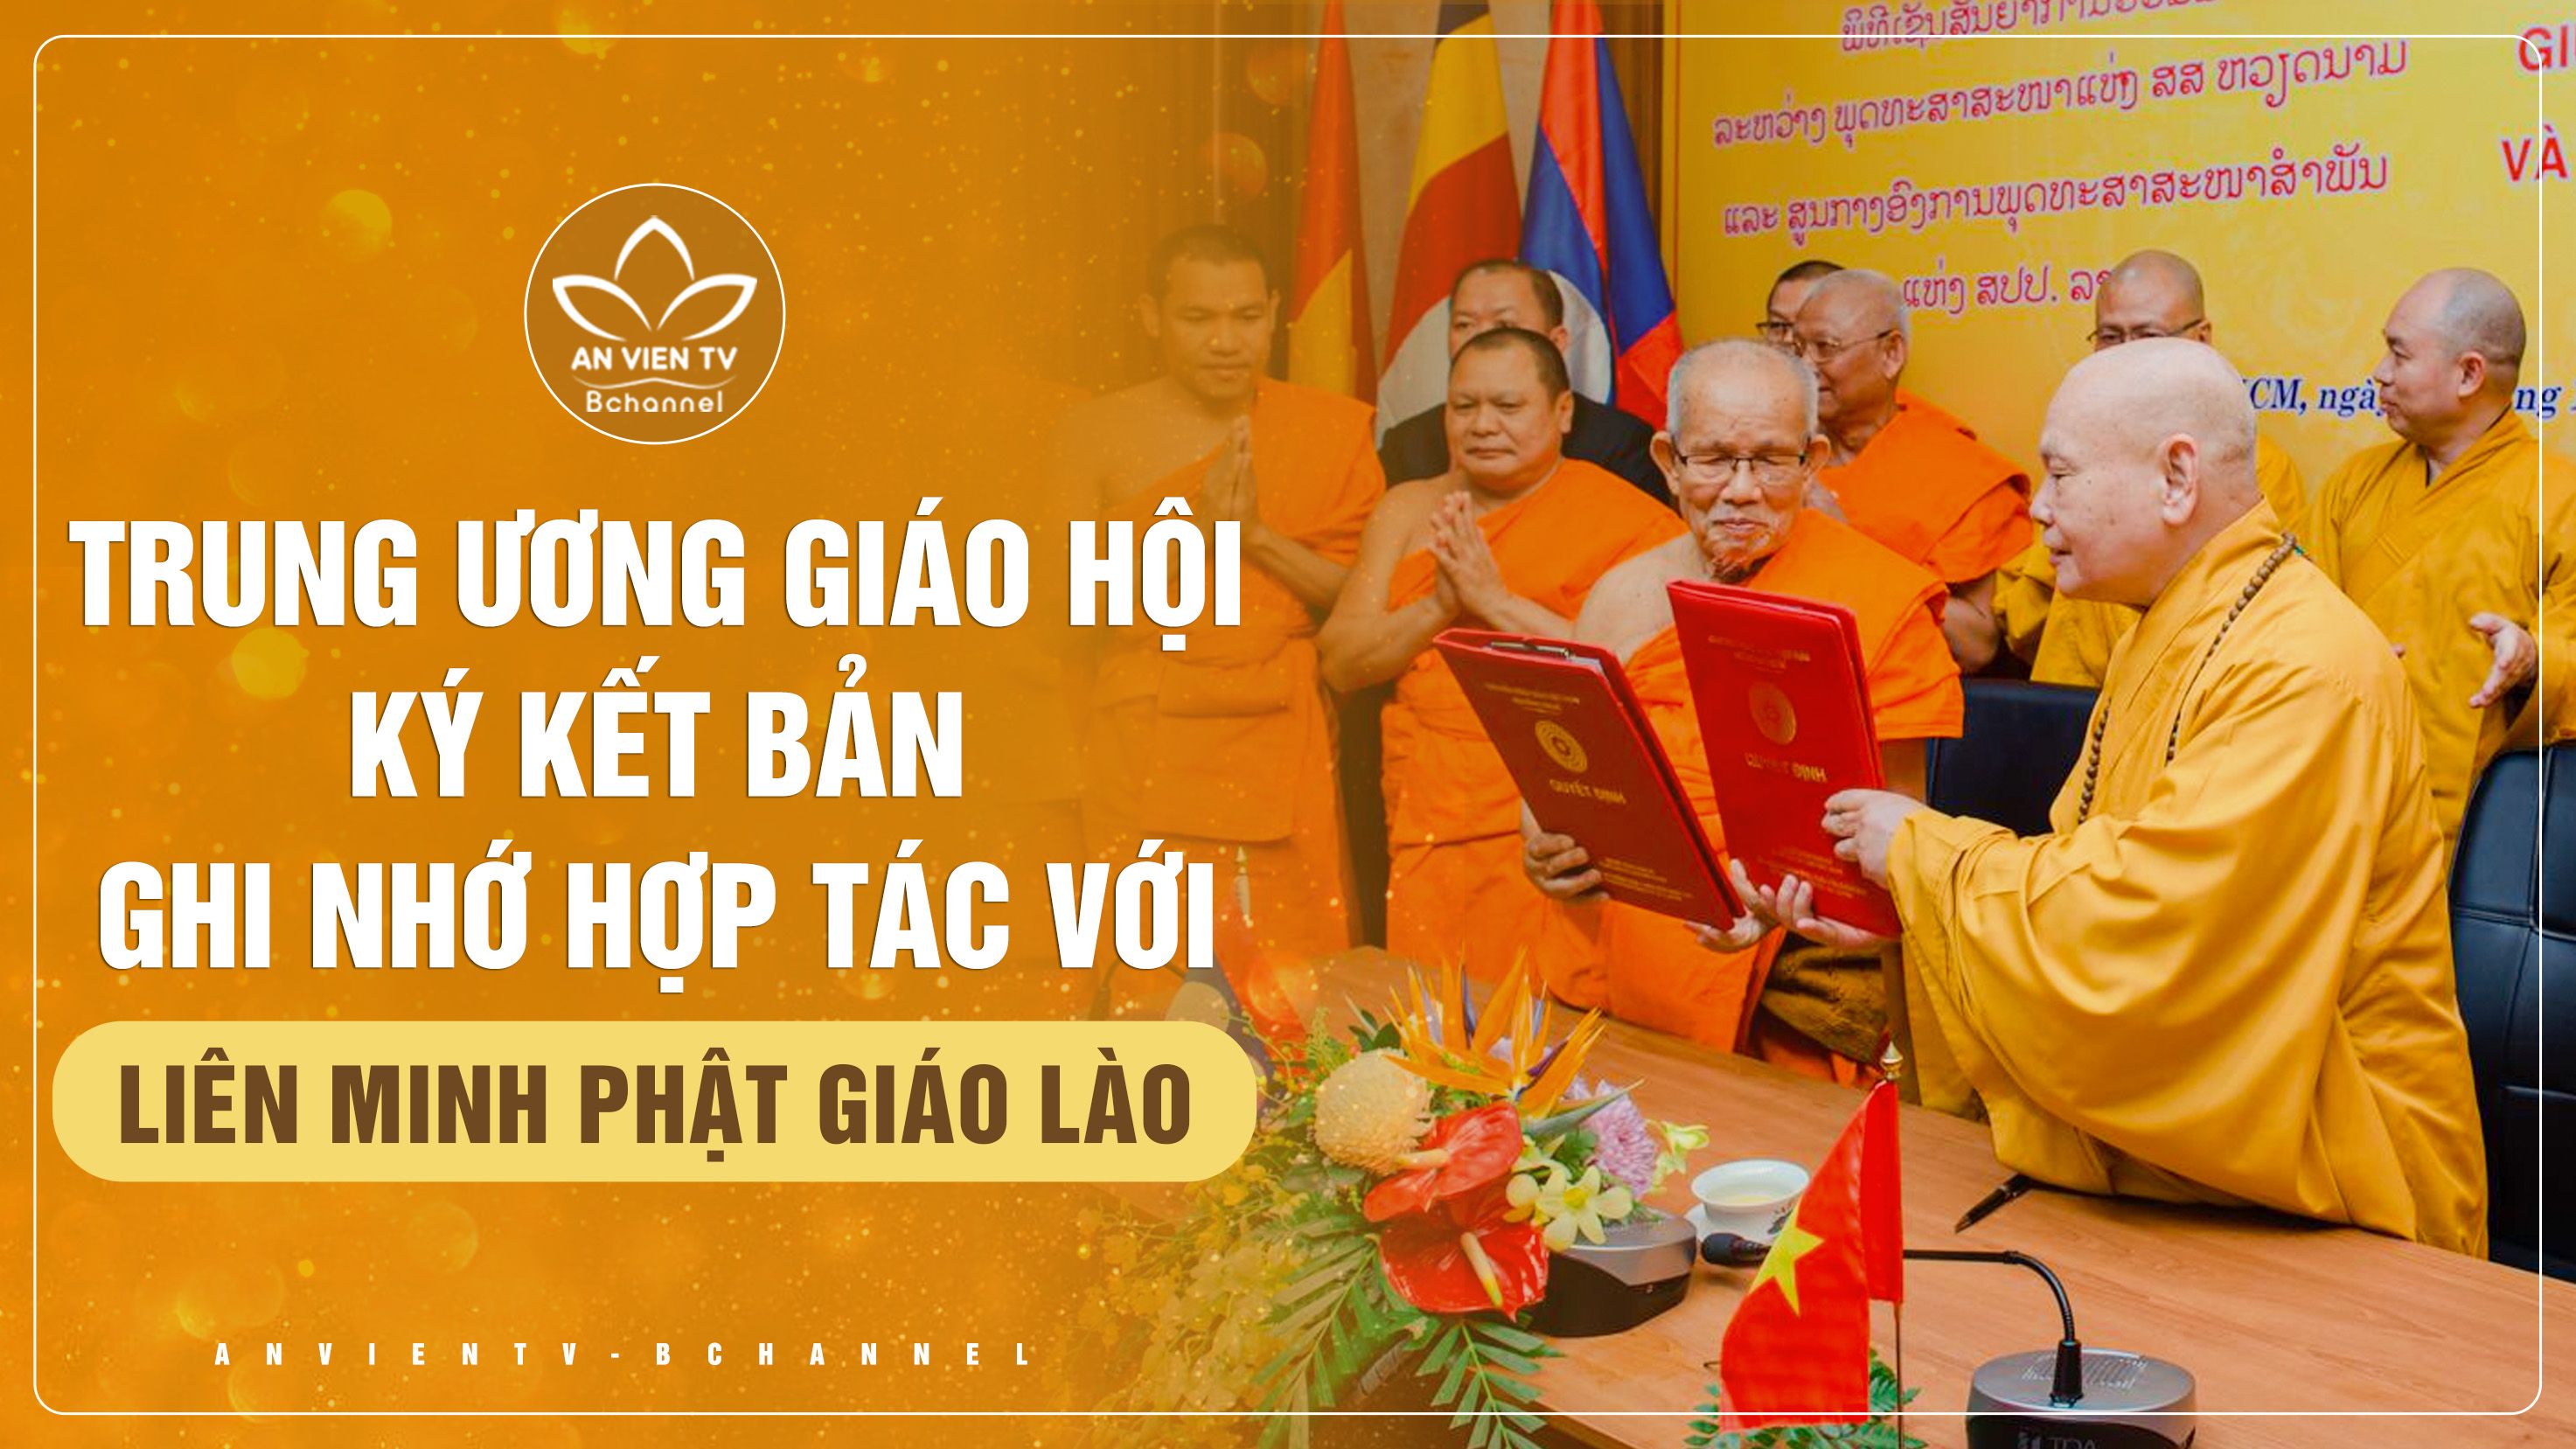 Trung ương Giáo hội ký kết bản ghi nhớ hợp tác với Liên minh Phật giáo Lào